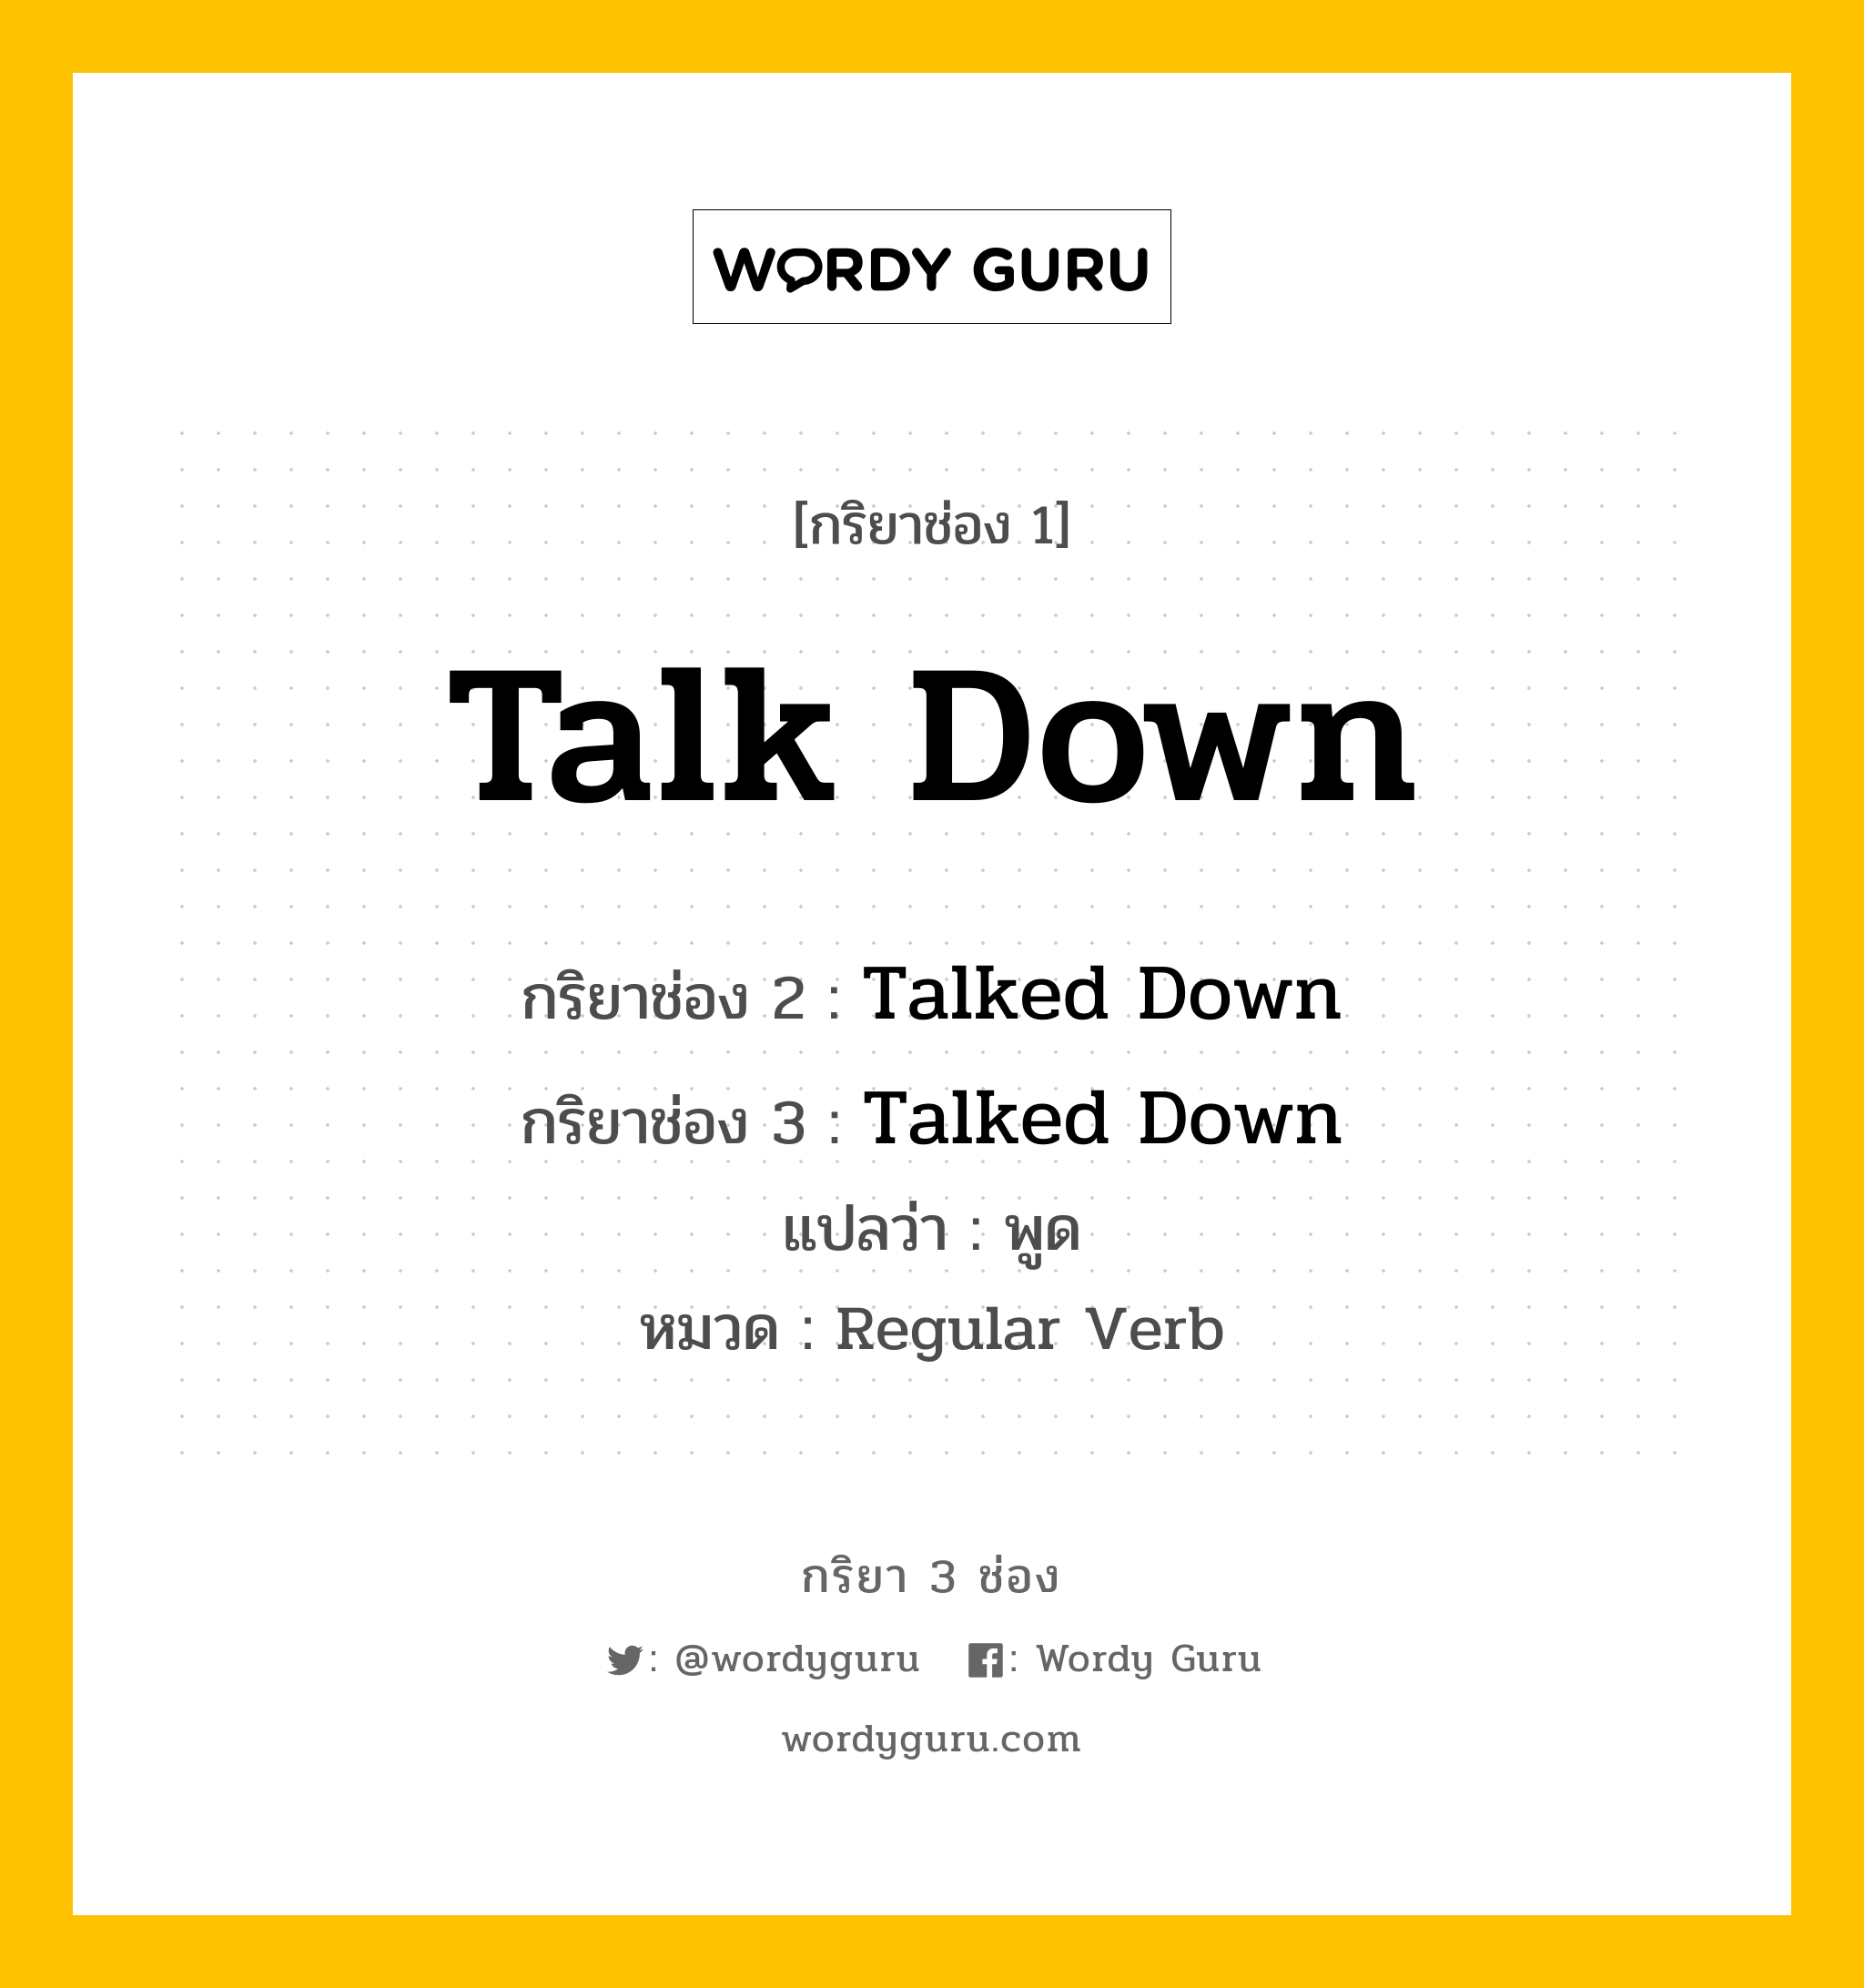 กริยา 3 ช่อง: Talk Down ช่อง 2 Talk Down ช่อง 3 คืออะไร, กริยาช่อง 1 Talk Down กริยาช่อง 2 Talked Down กริยาช่อง 3 Talked Down แปลว่า พูด หมวด Regular Verb หมวด Regular Verb